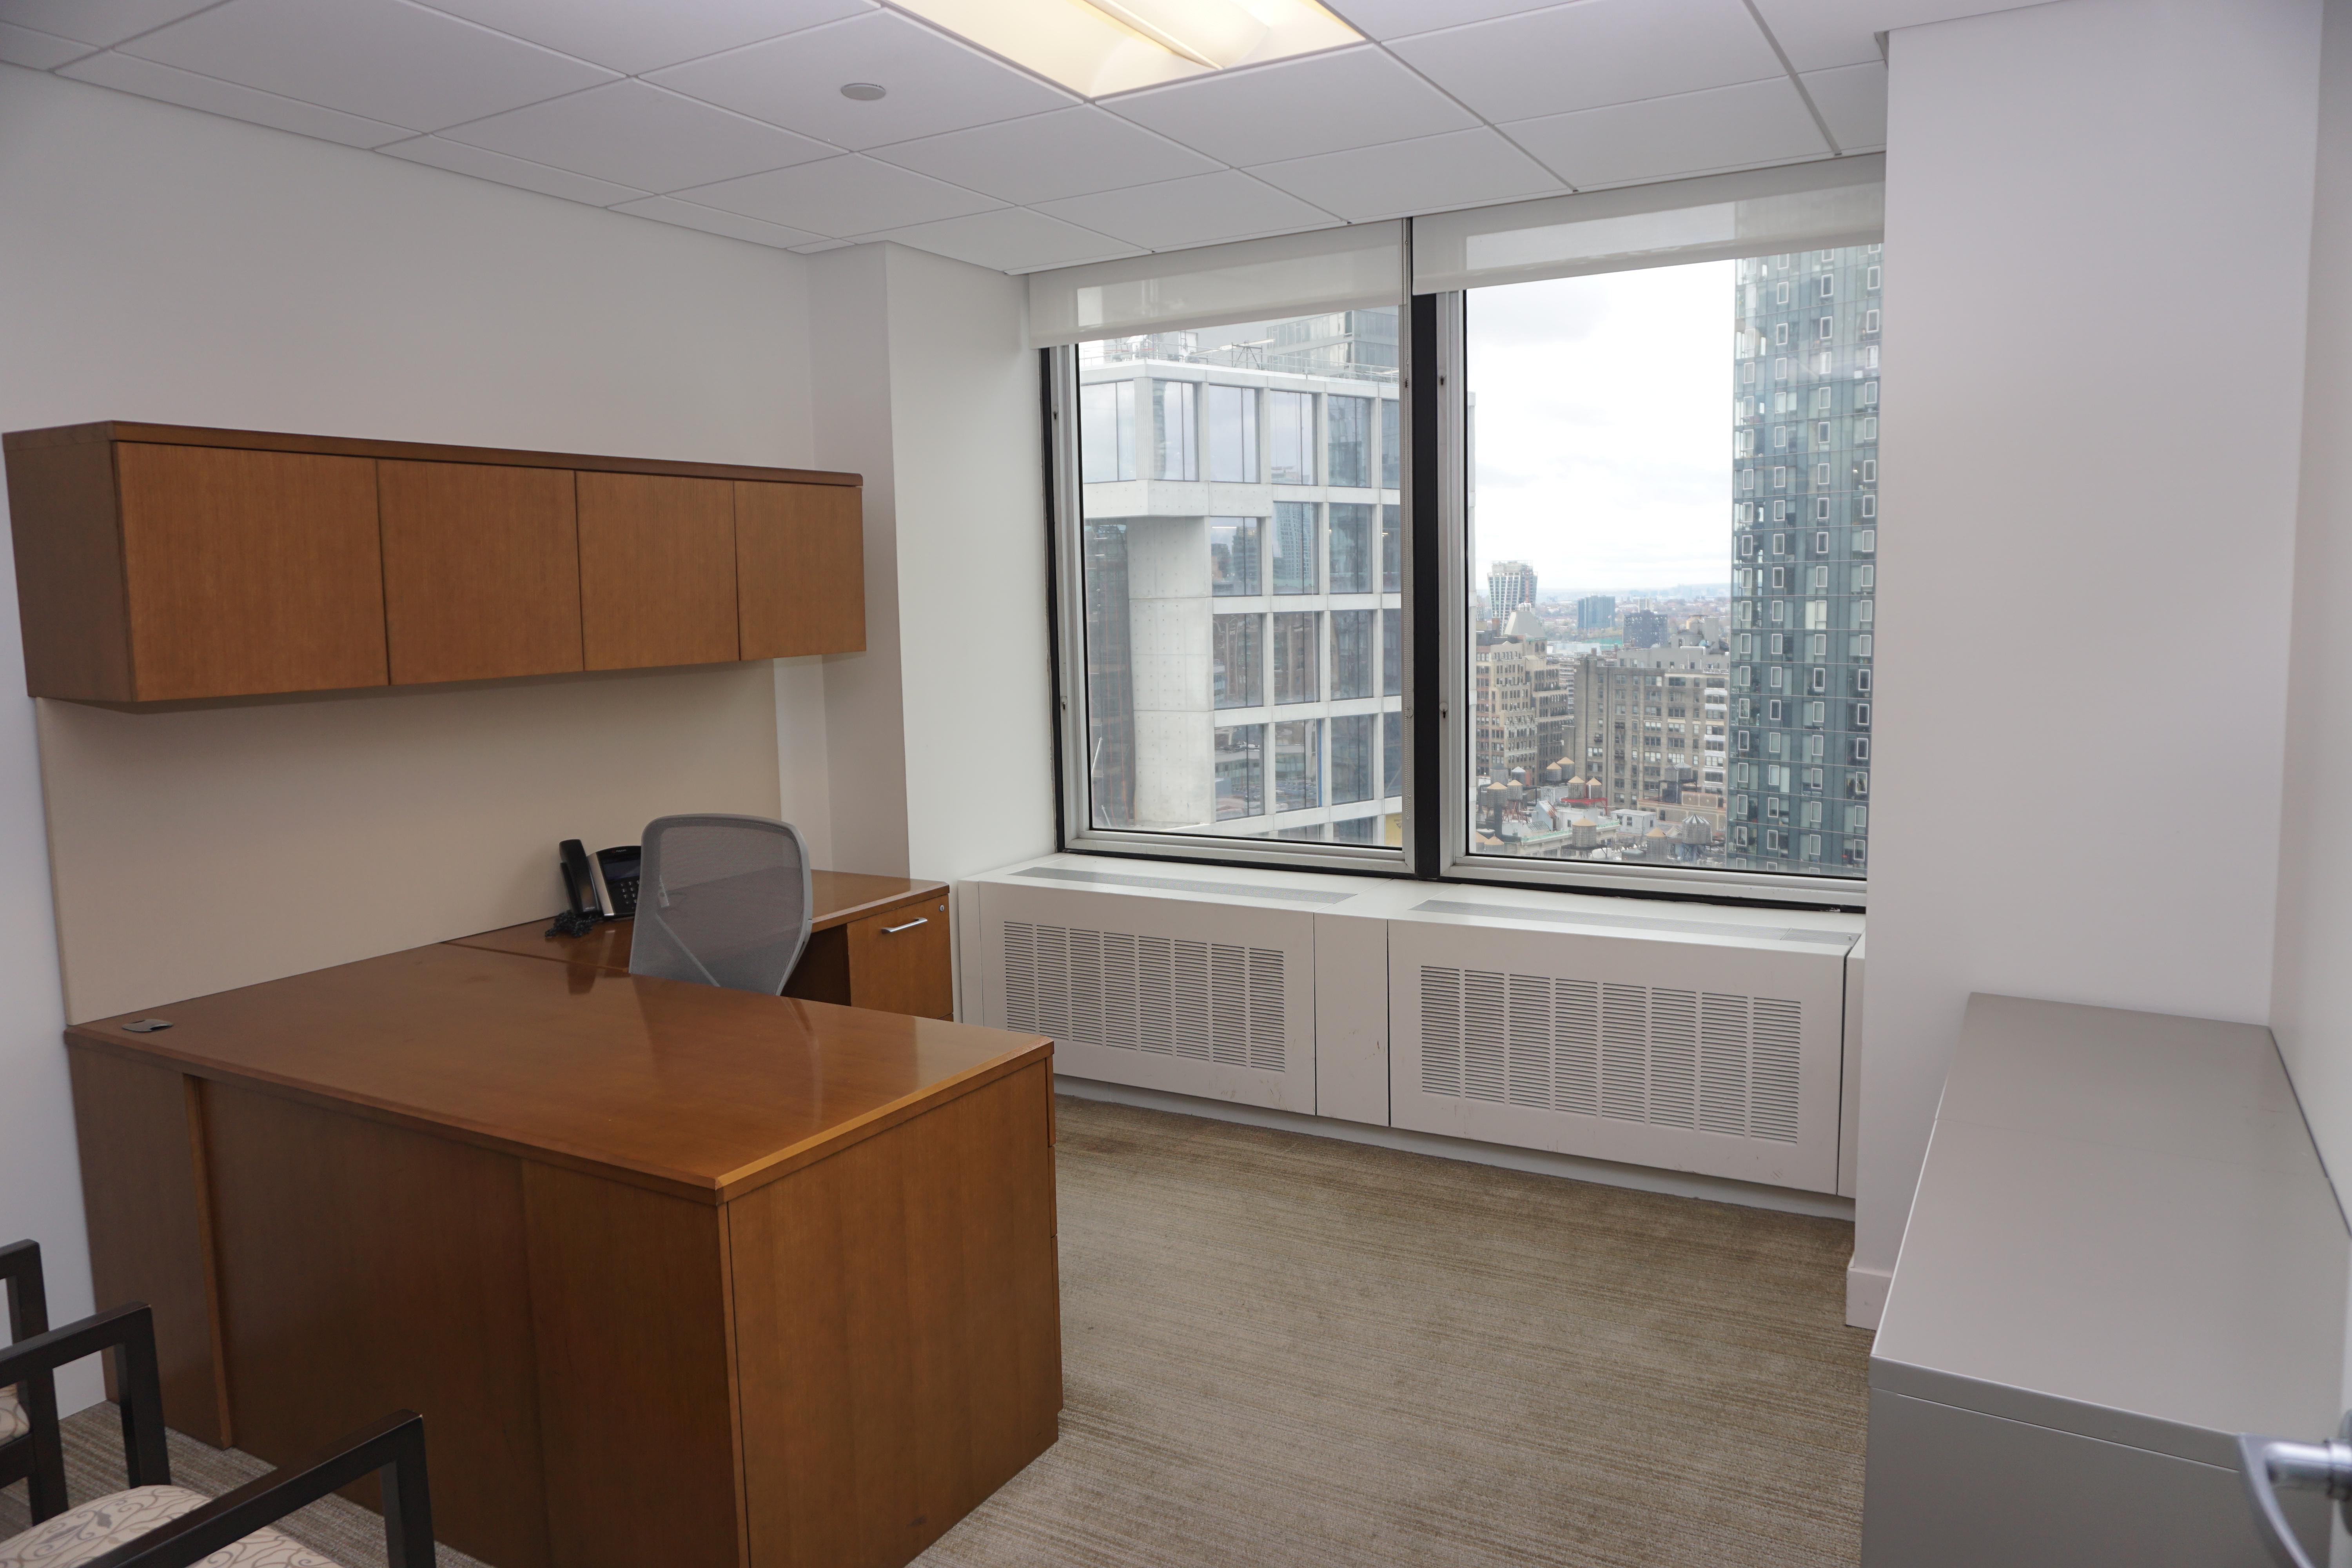 1250 Broadway New York NY Office example - 2 windows